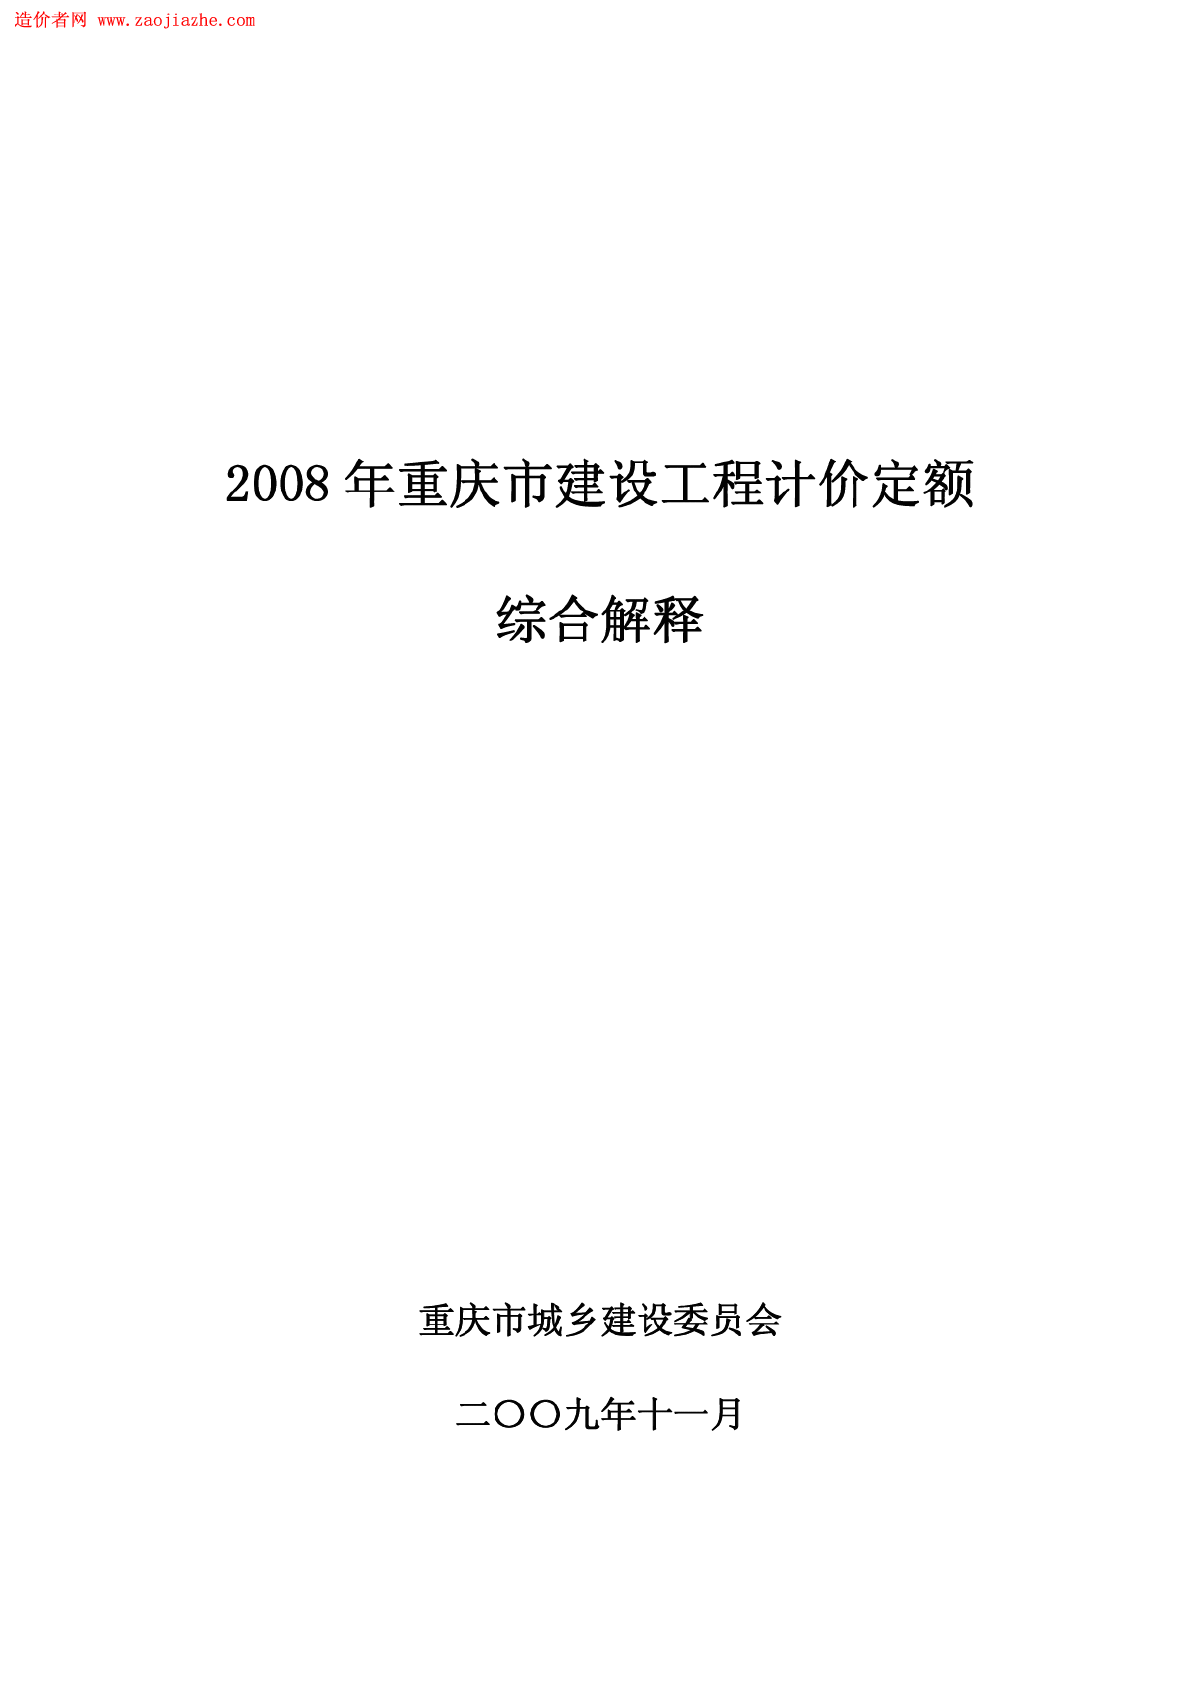 重庆市建设工程计价定额综合解释(2008)